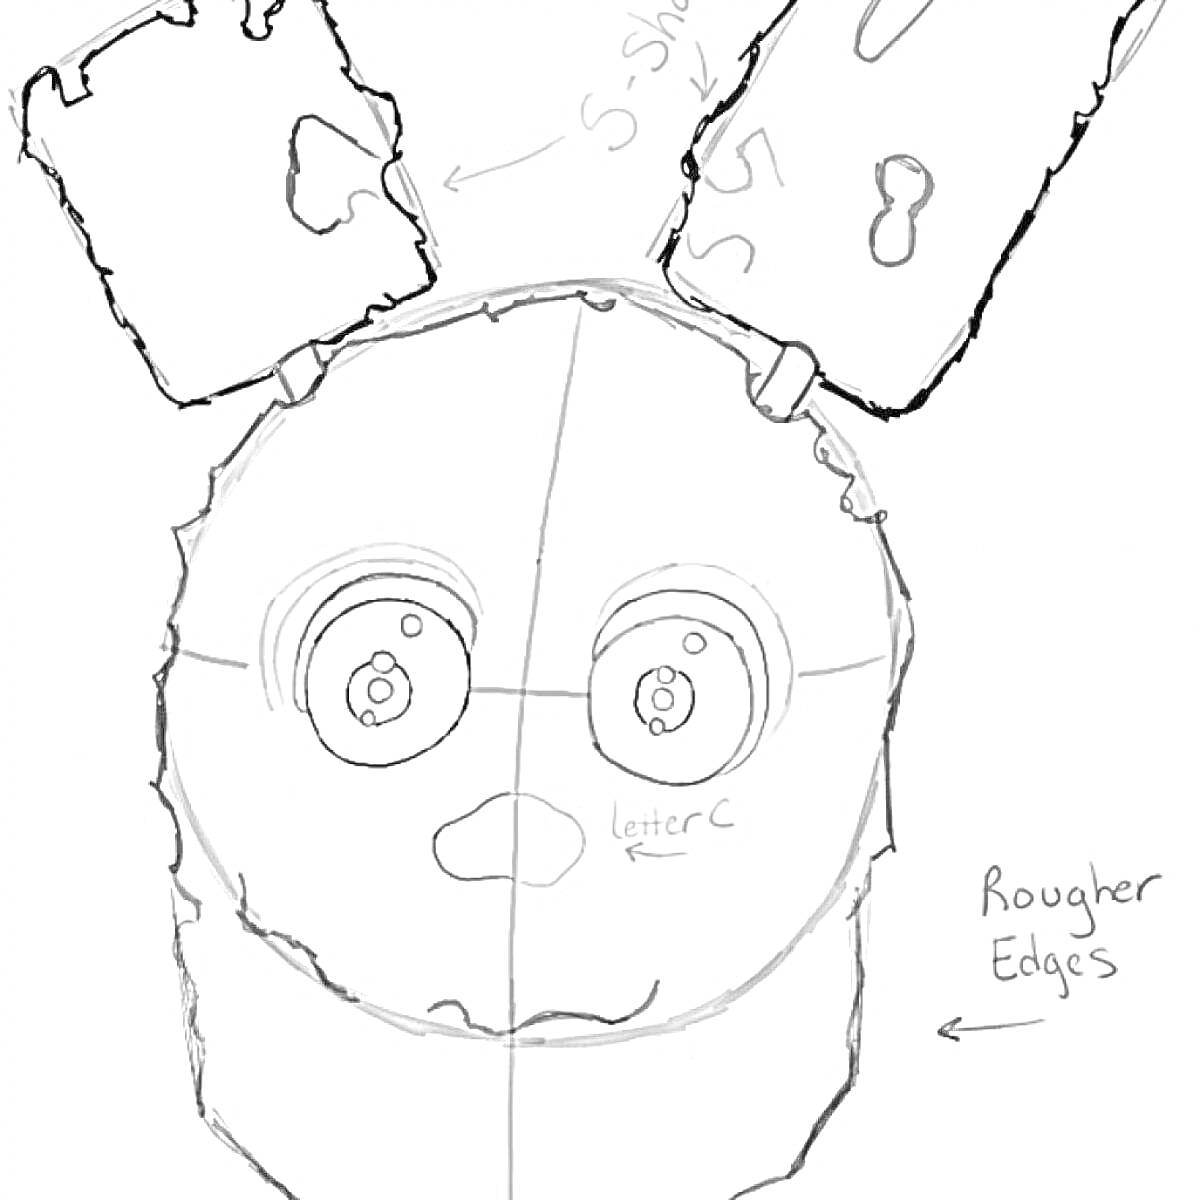 Раскраска Спригтрап, поврежденная маска с ушами, грубые края, обозначения символов и линий